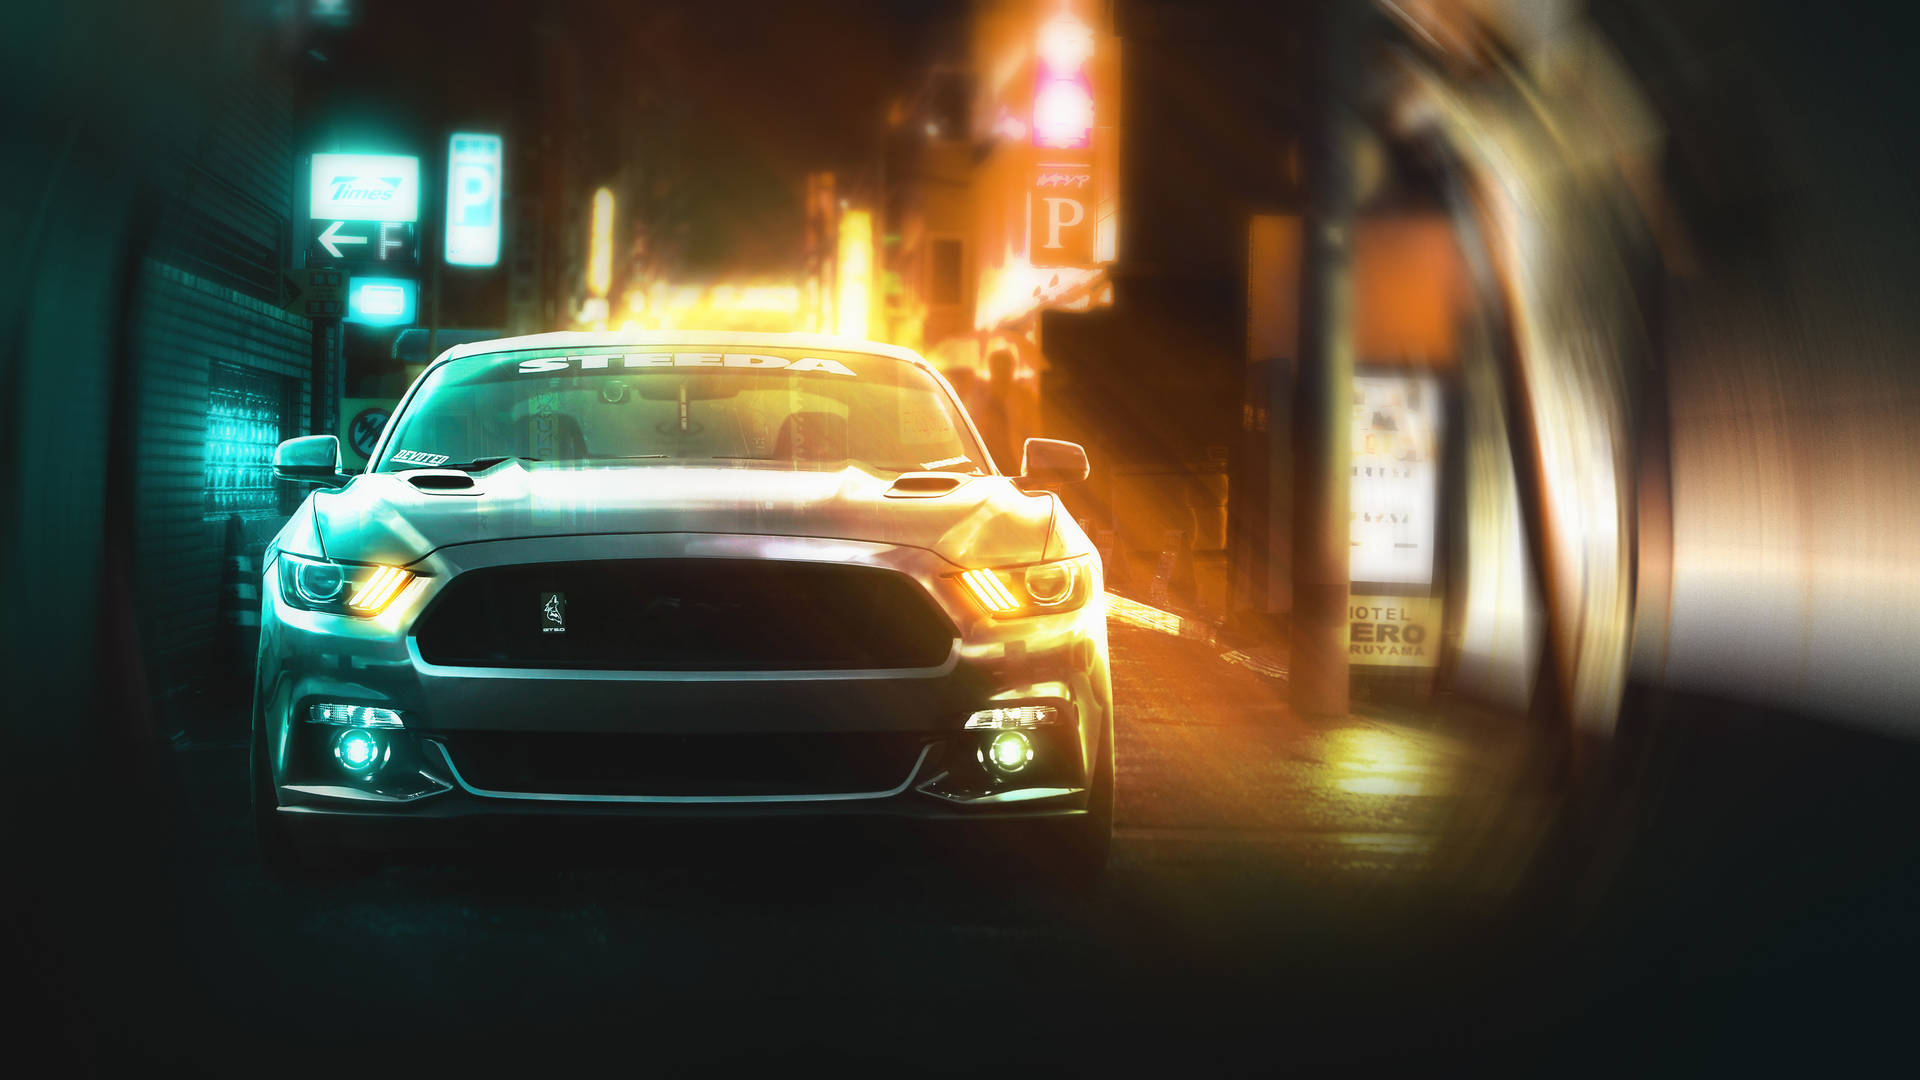 Føl spændingen ved mulighederne med det kølige Mustang-design. Wallpaper